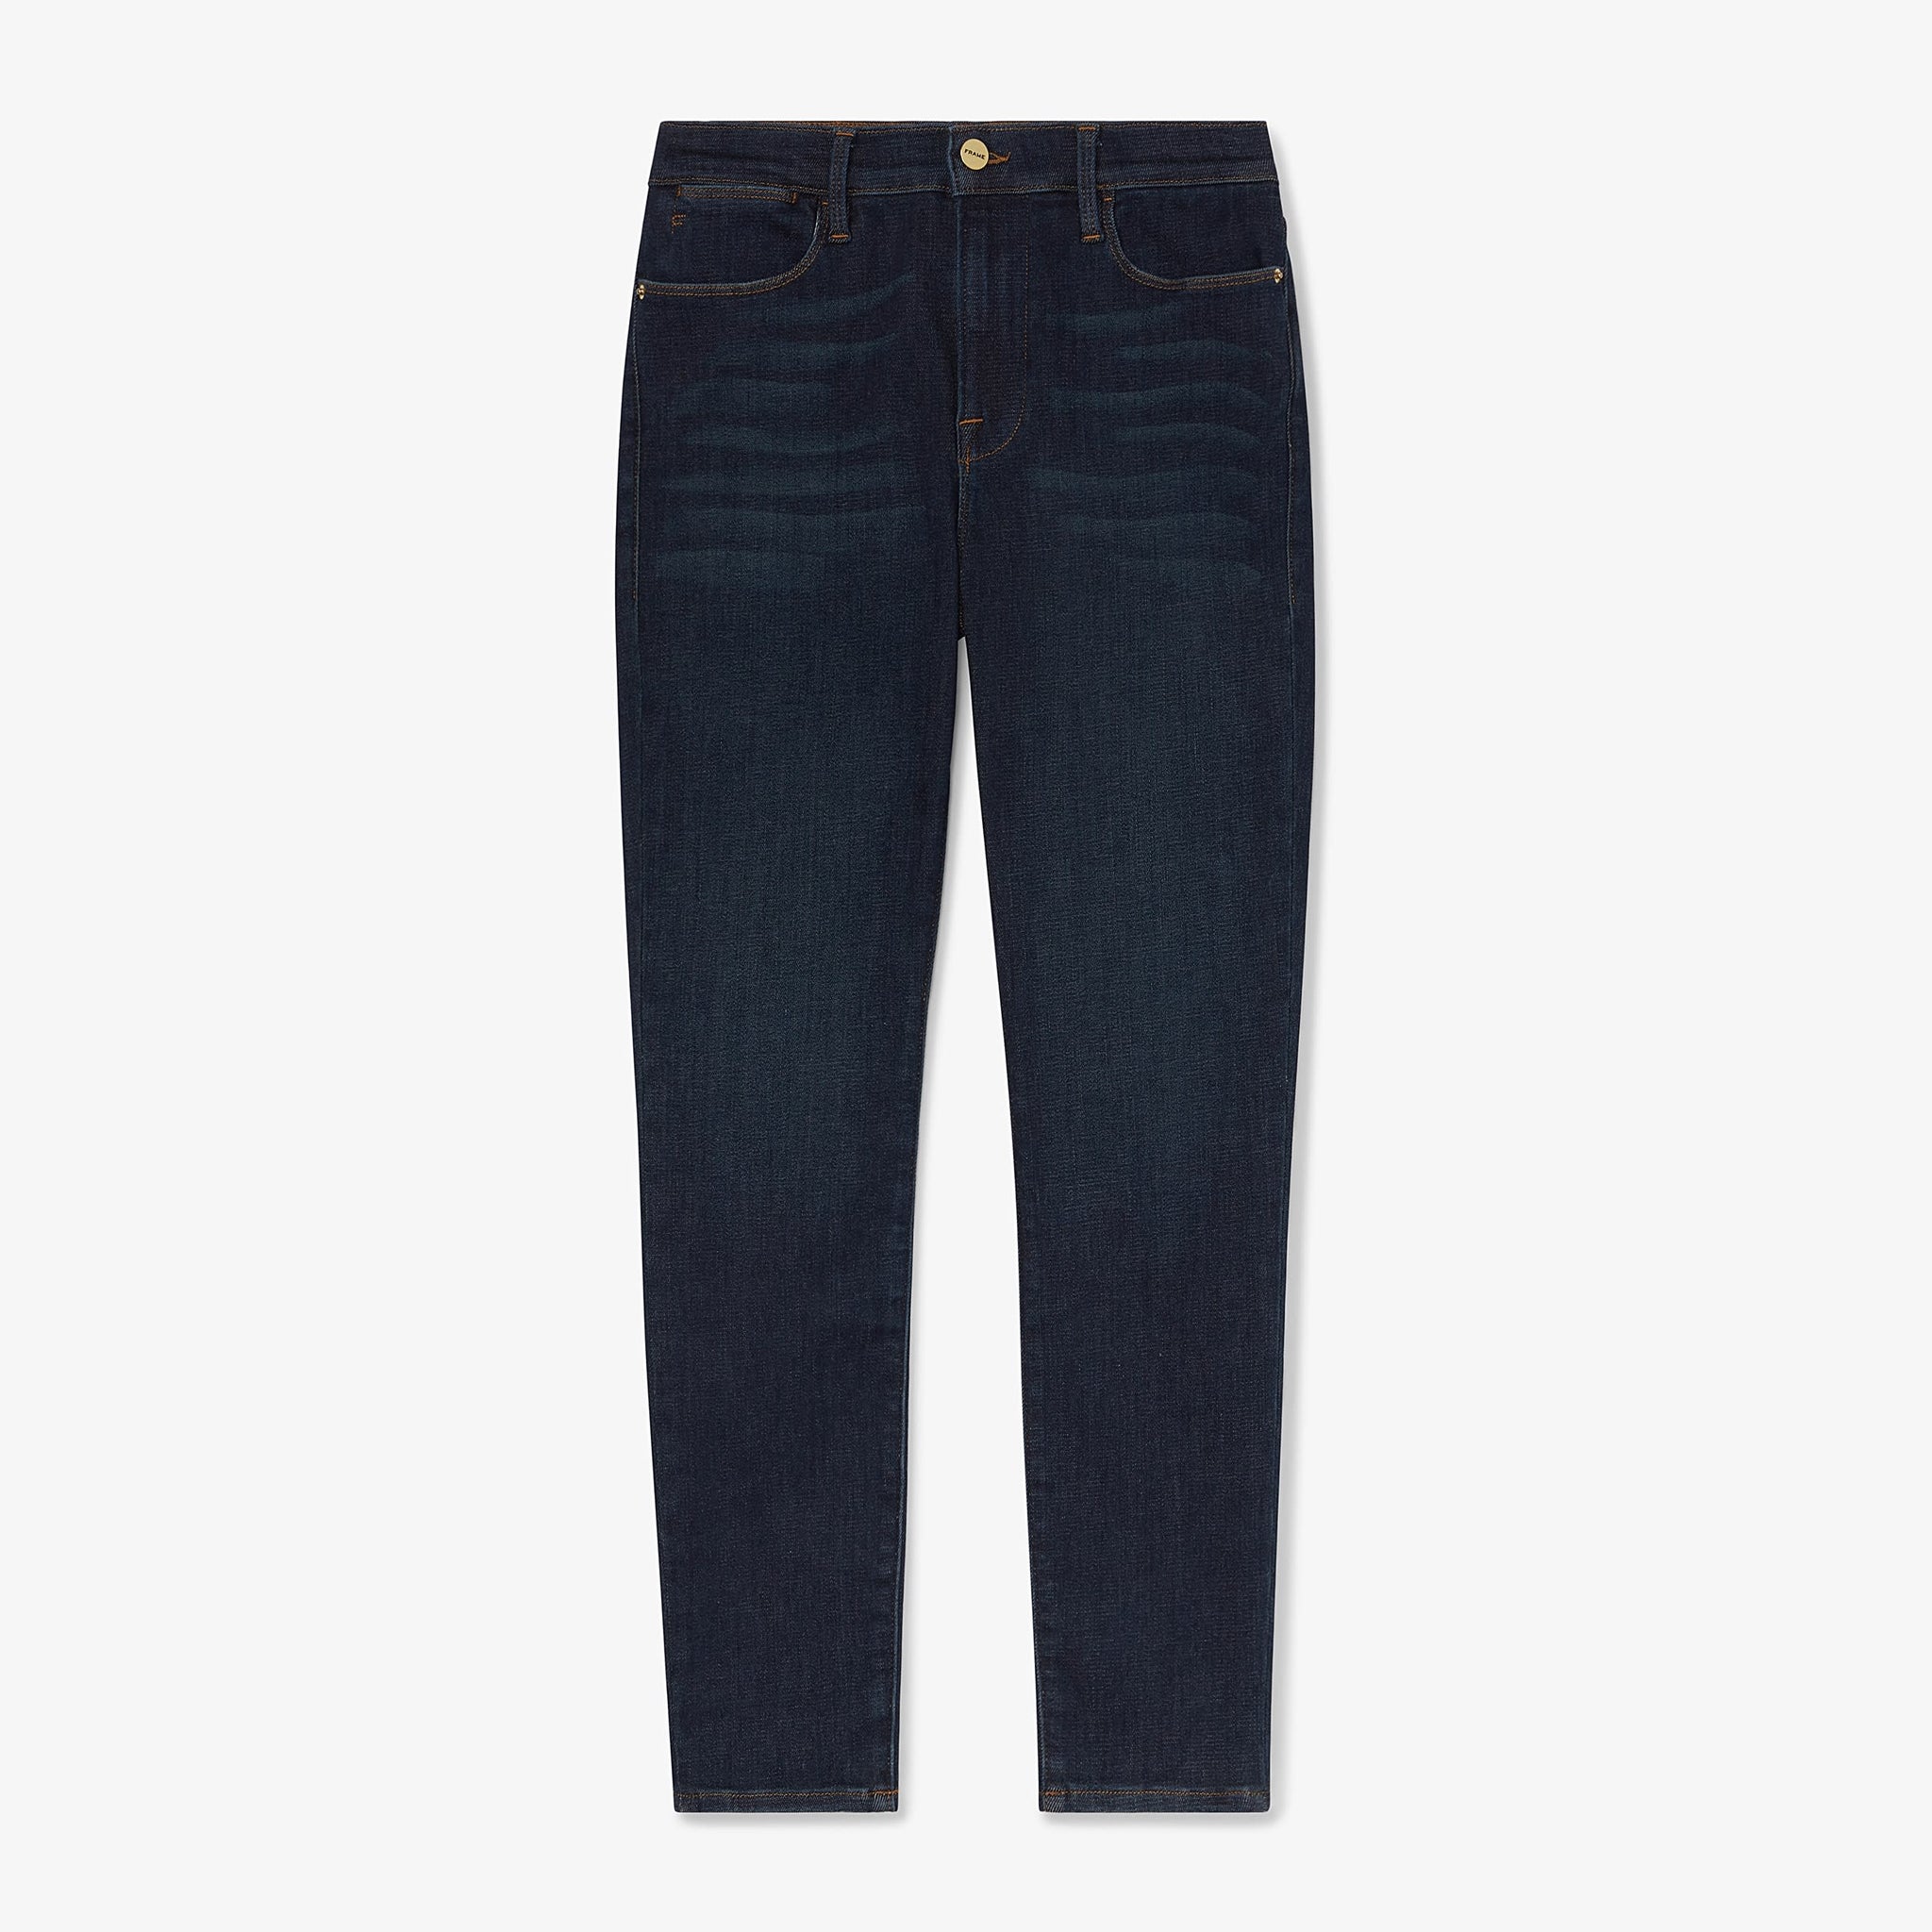 Packshot image of the FRAME Denim Le High Skinny Crop Jean in Samira